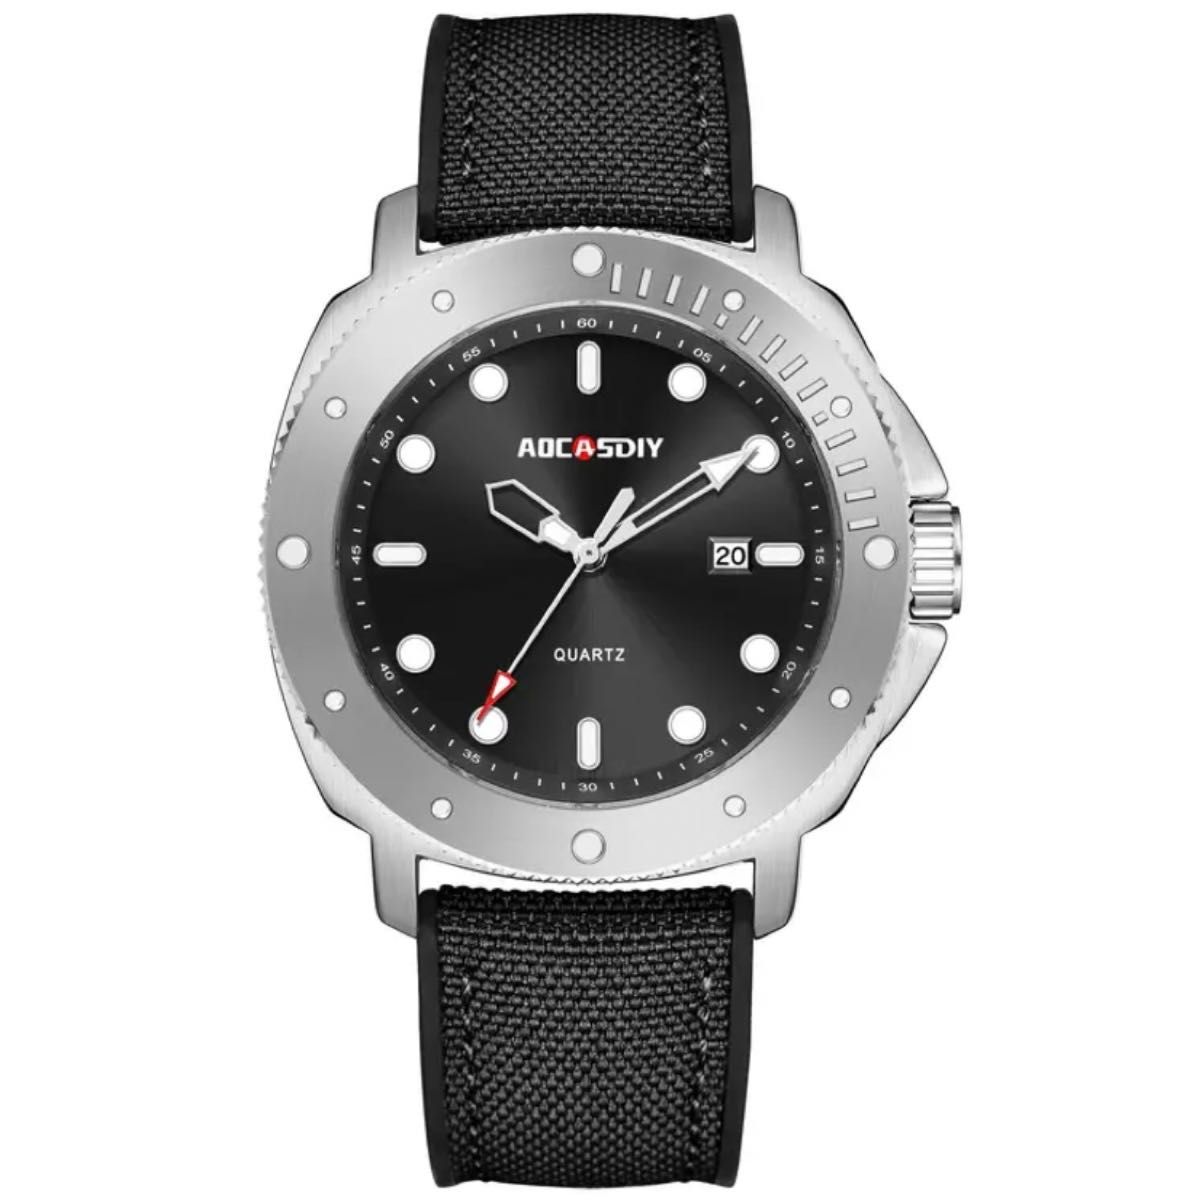 新品 AOCASDIY クラシックデザインウォッチ ラバーストラップ メンズ腕時計  ブラック